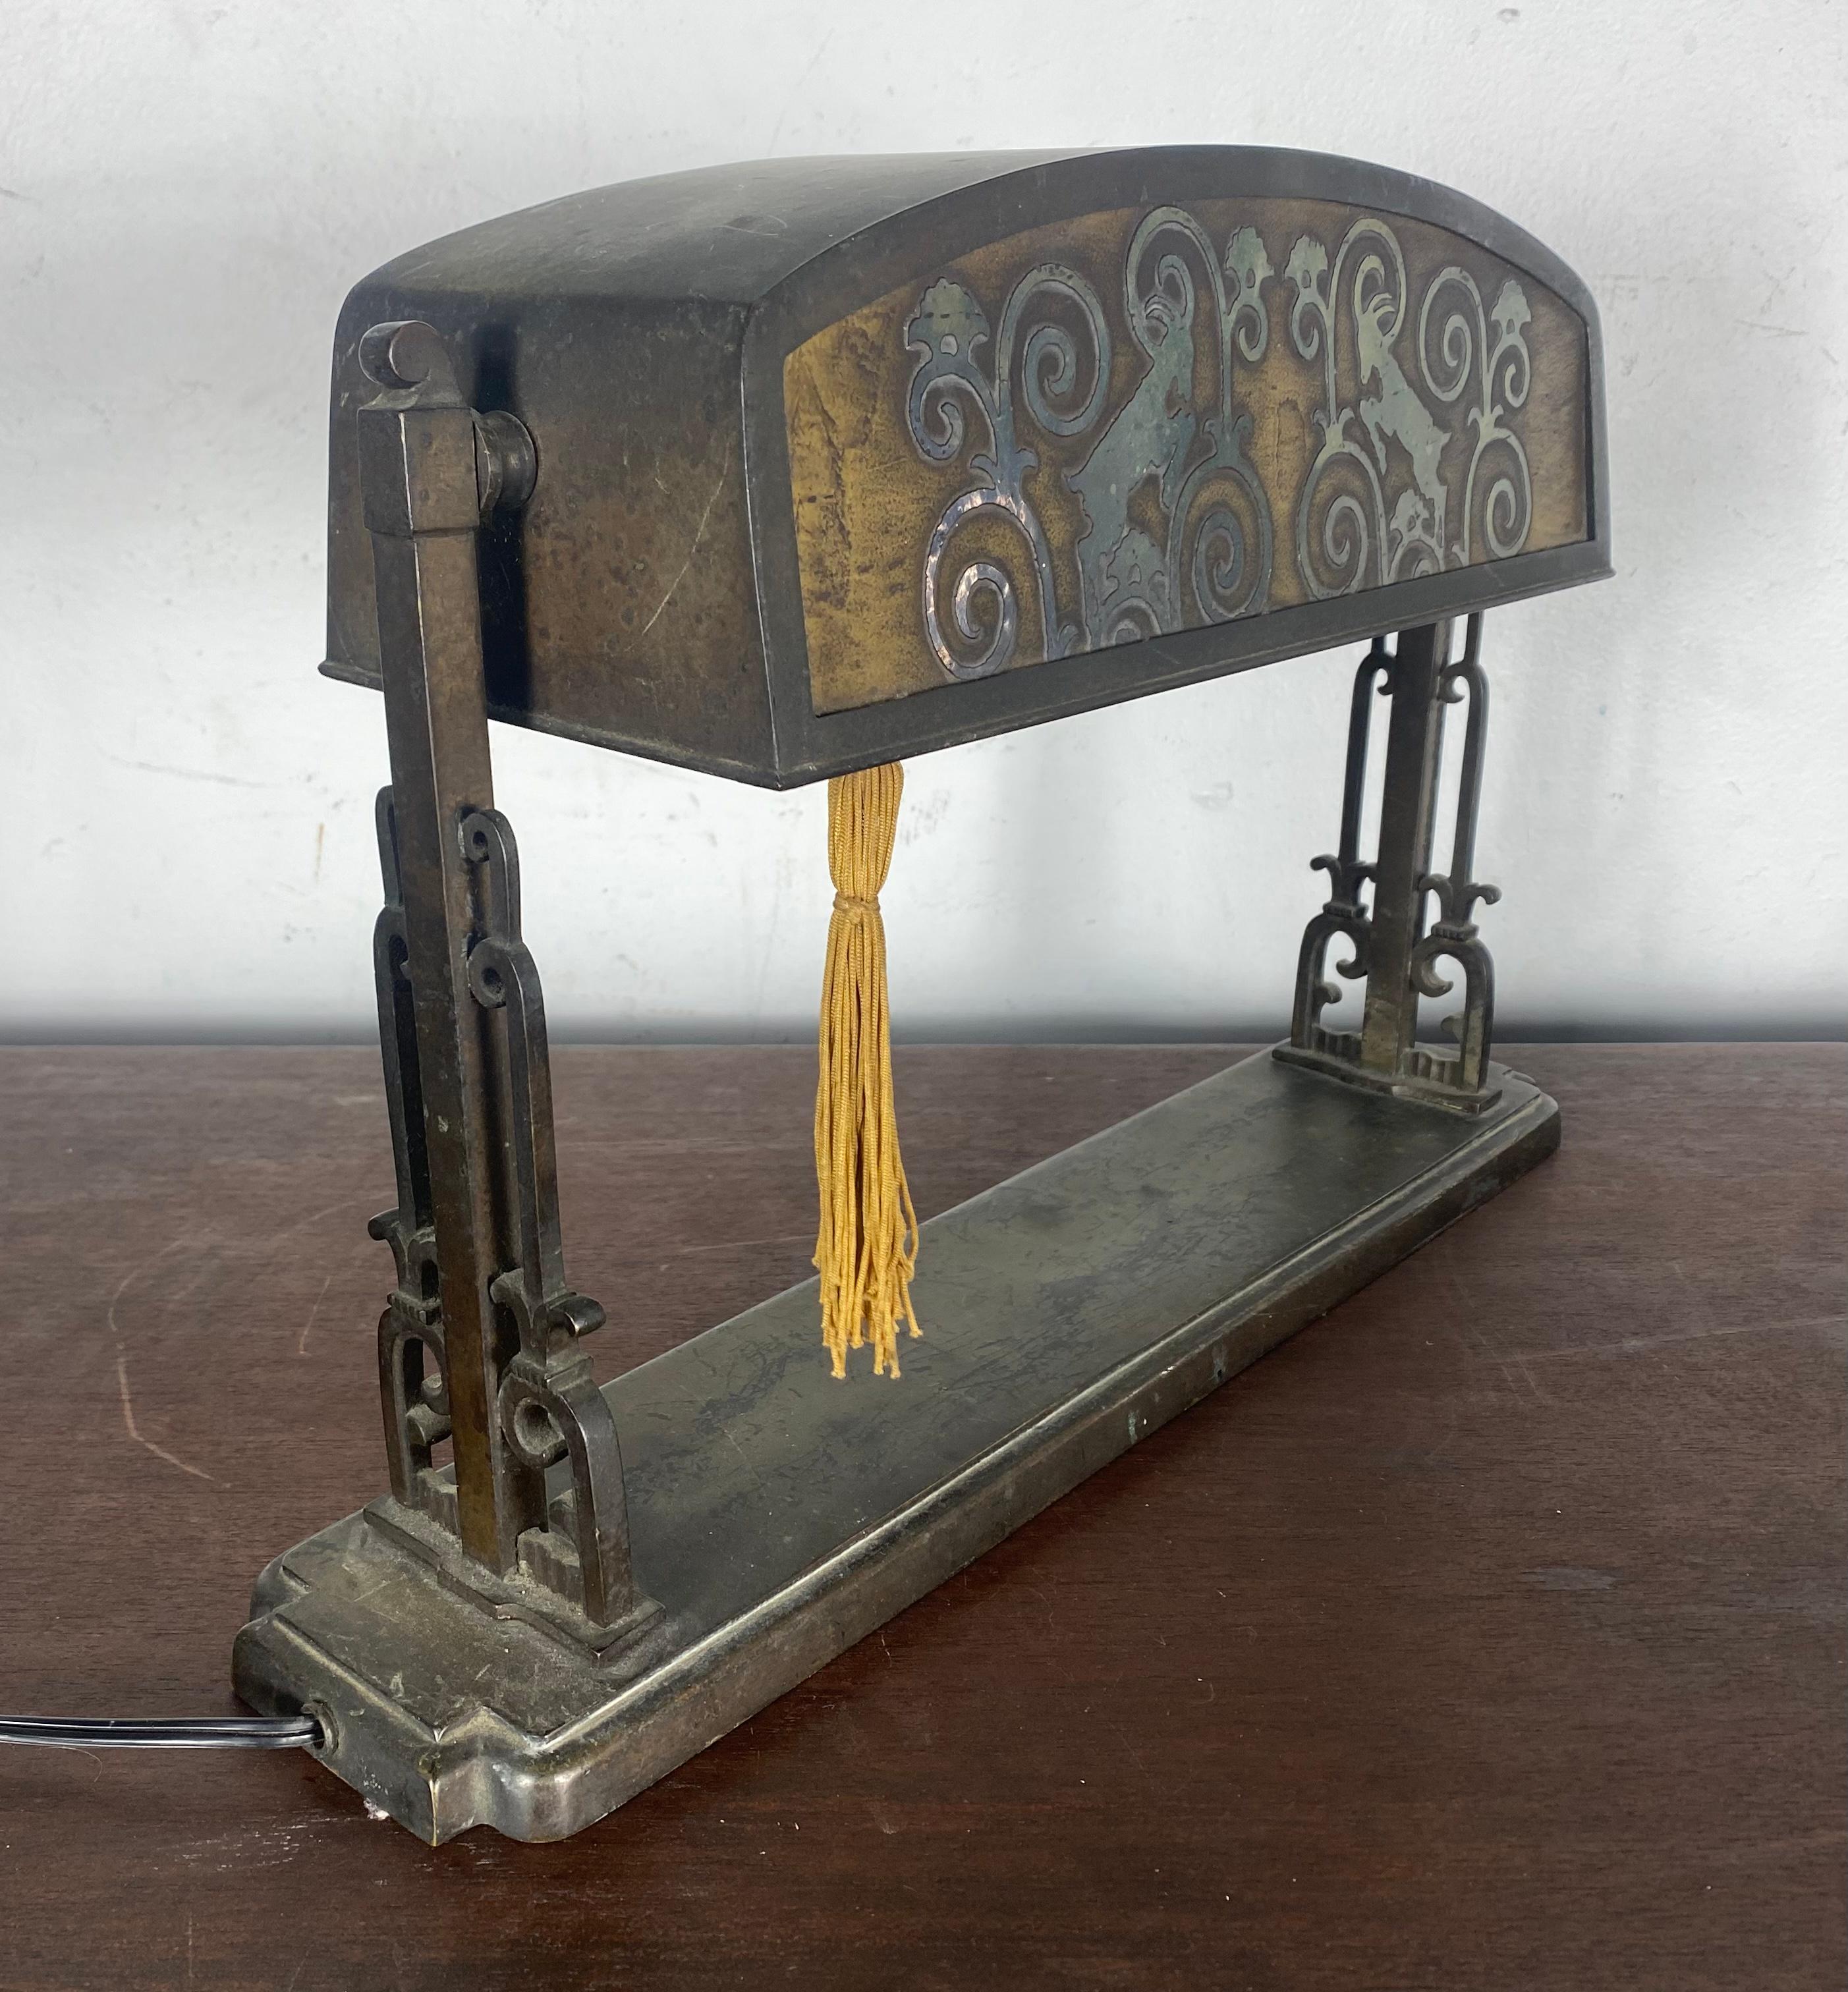 Ungewöhnliche Tisch-/Schreibtischlampe aus Bronze und geätztem Glas mit einem erstaunlichen stilisierten Widderkopf-Motiv. Behält seine ursprüngliche Patina. Farbe, Oberfläche, auch original Quastenzug-Ein/Aus-Schalter.